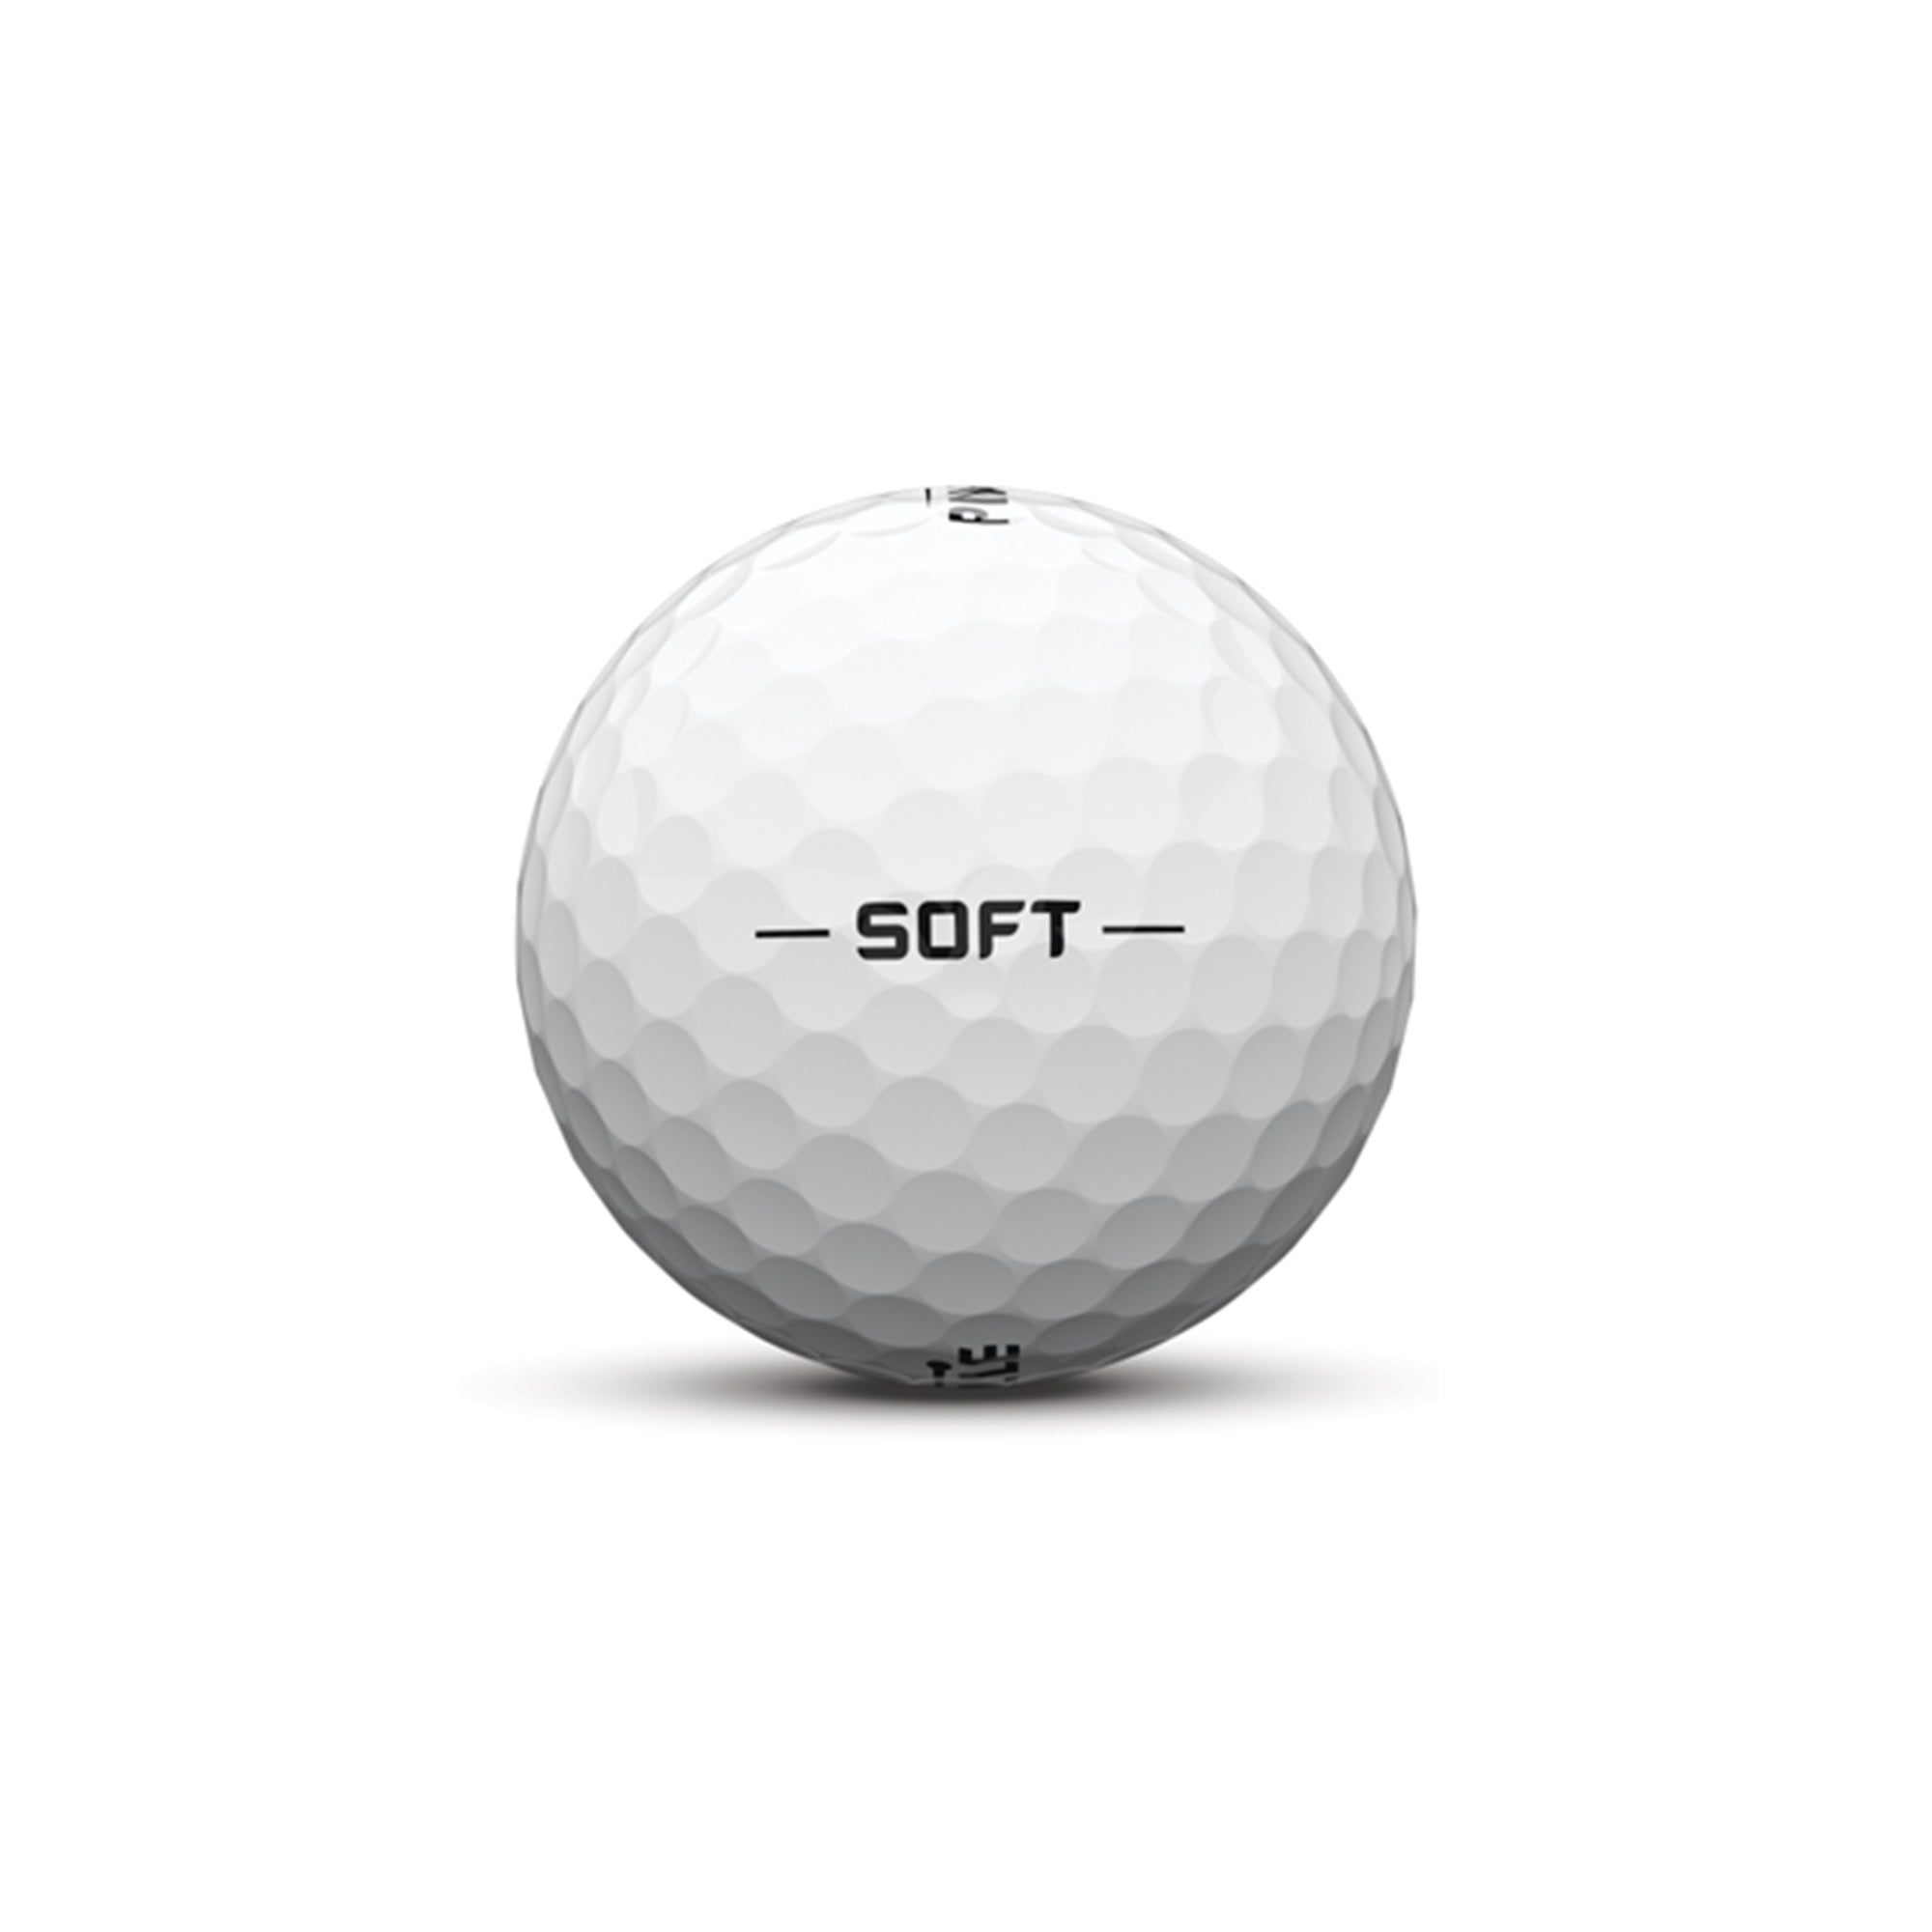 pinnacle-soft-golf-ball-15-pack-p5012s-white